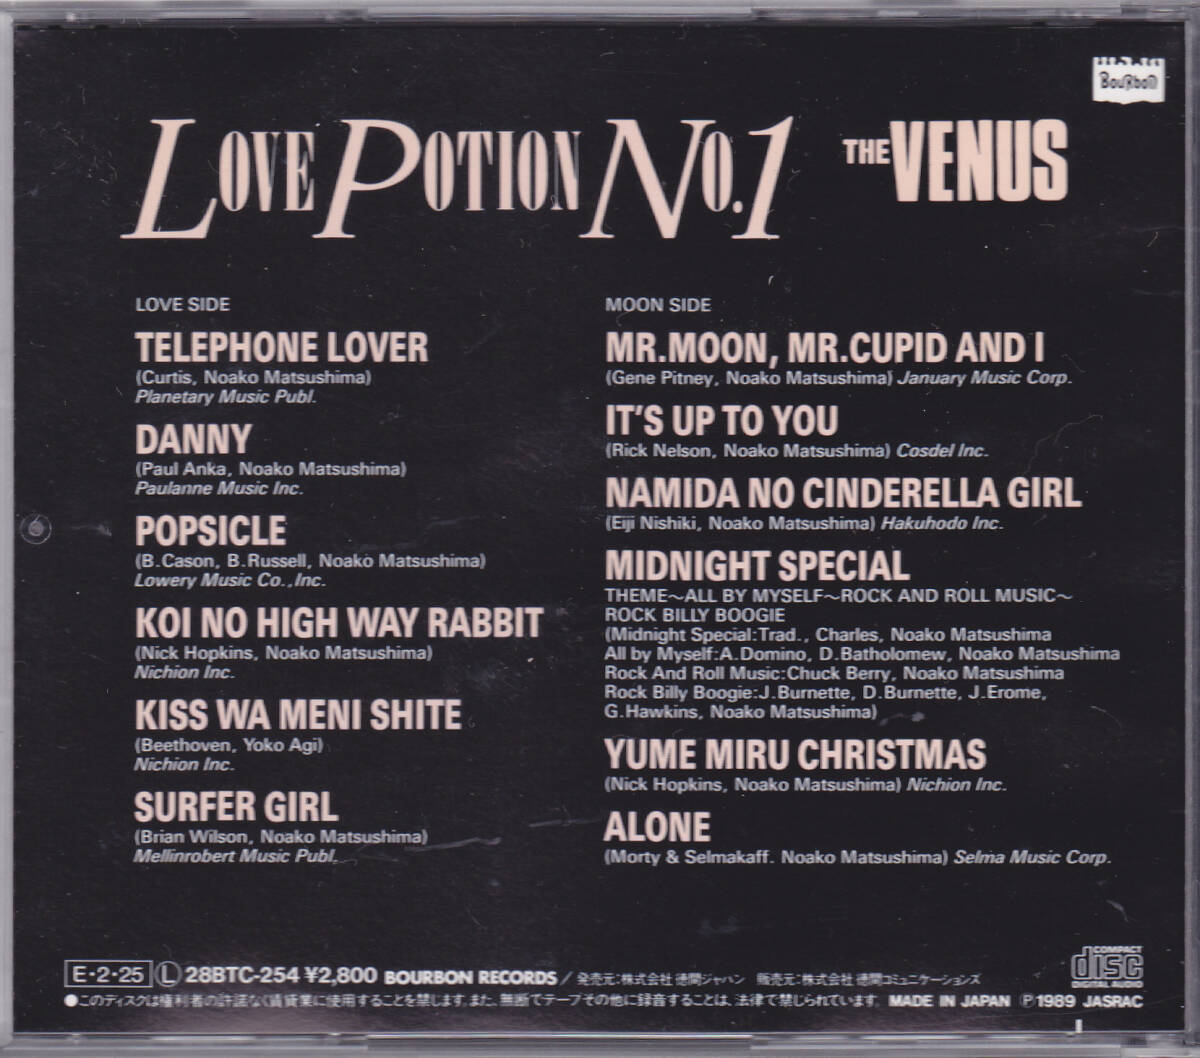 CD ザ・ヴィーナス - LOVE POTION No.1 - 28BTC-254 THE VENUS ラブ・ポーション No.1_画像2